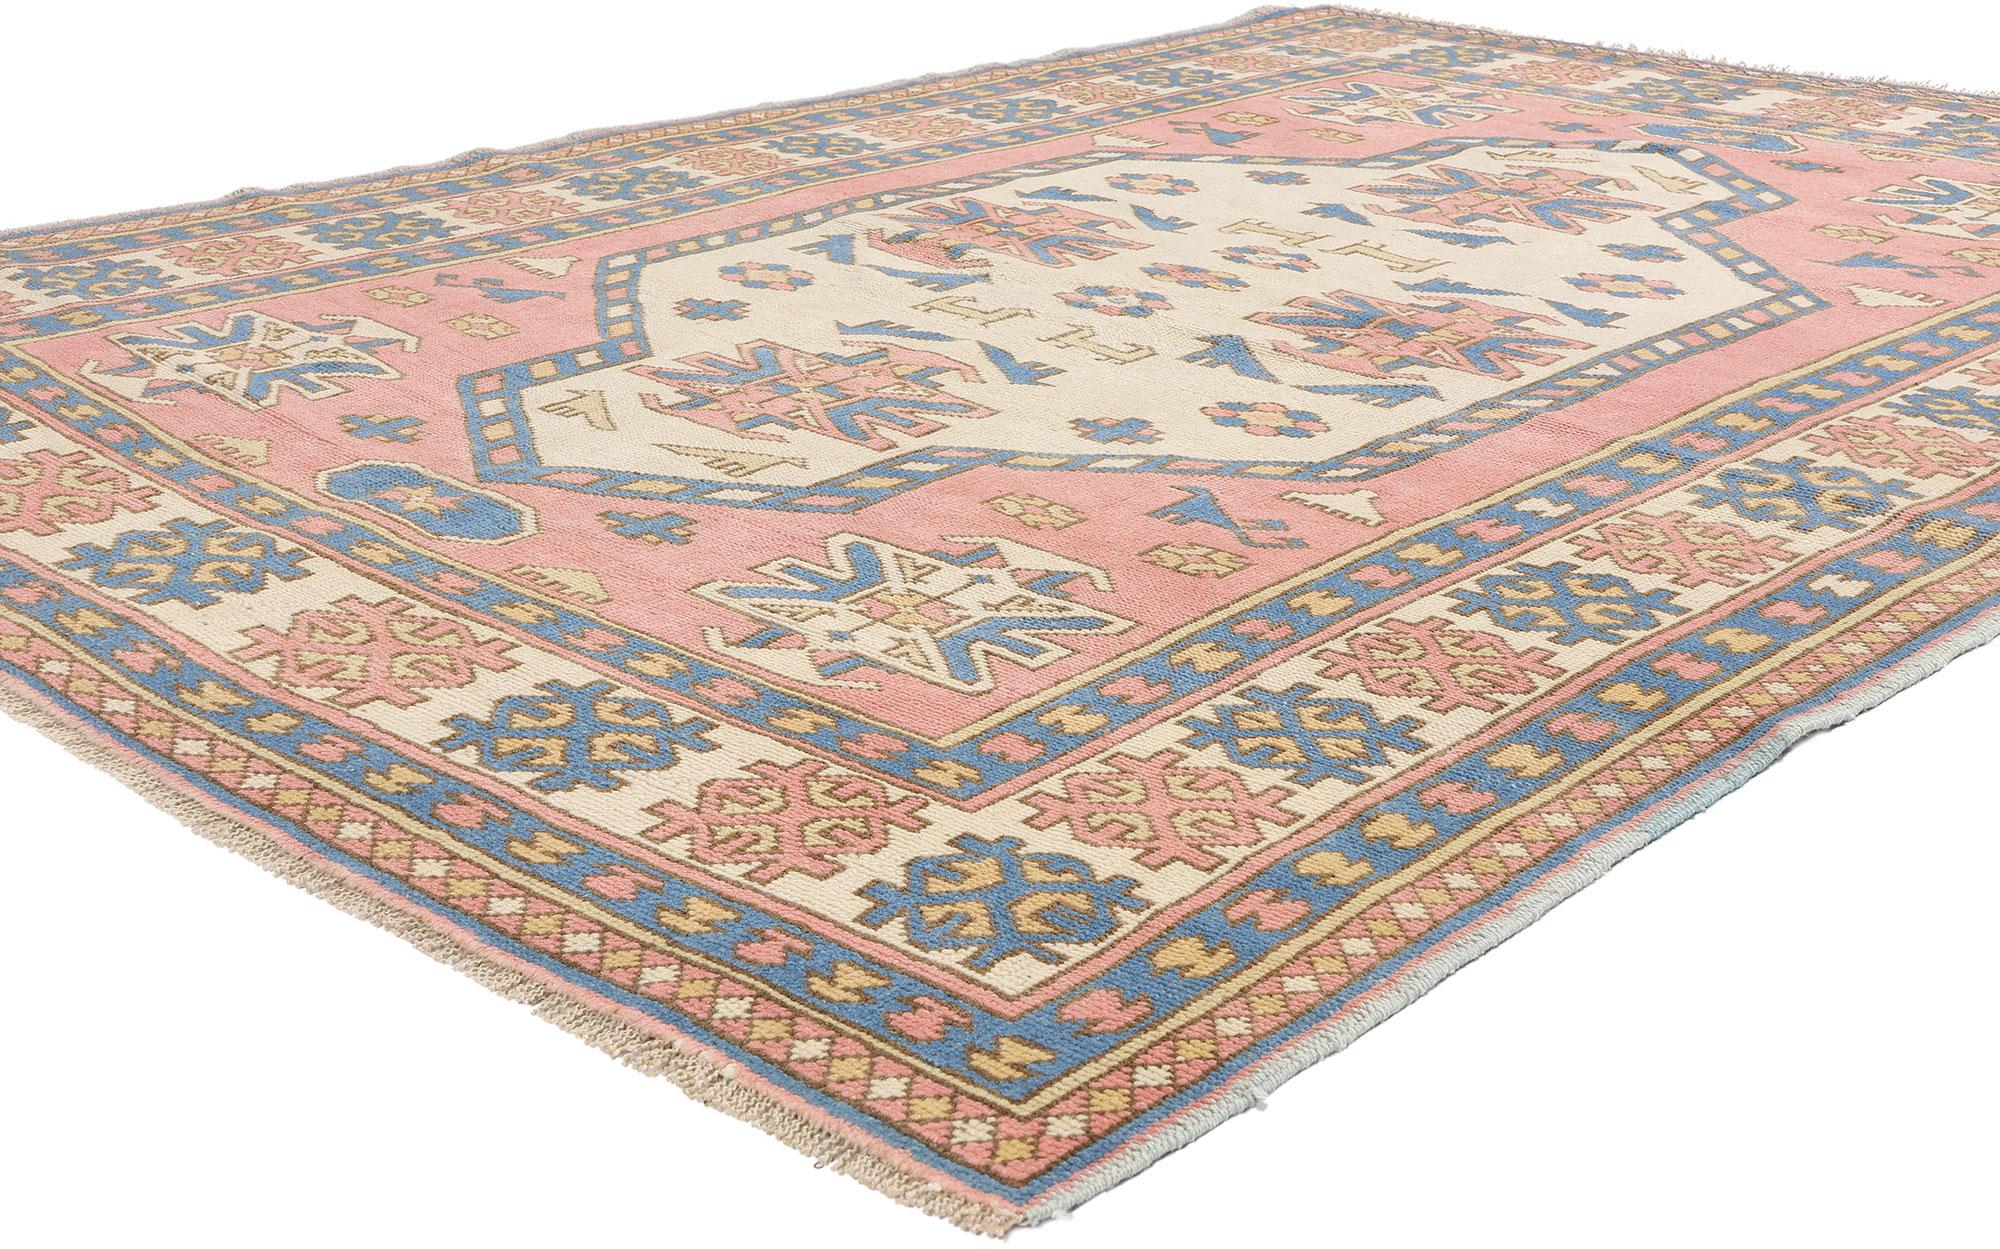 53944 Vintage Pink Persian Hamadan Rug, 05'07 x 07'06. Die persischen Nahavand-Hamadan-Teppiche, die aus dem iranischen Nahavand-Gebiet im Großraum Hamadan stammen, vereinen die Knüpftraditionen beider Regionen und bieten eine ausgeprägte